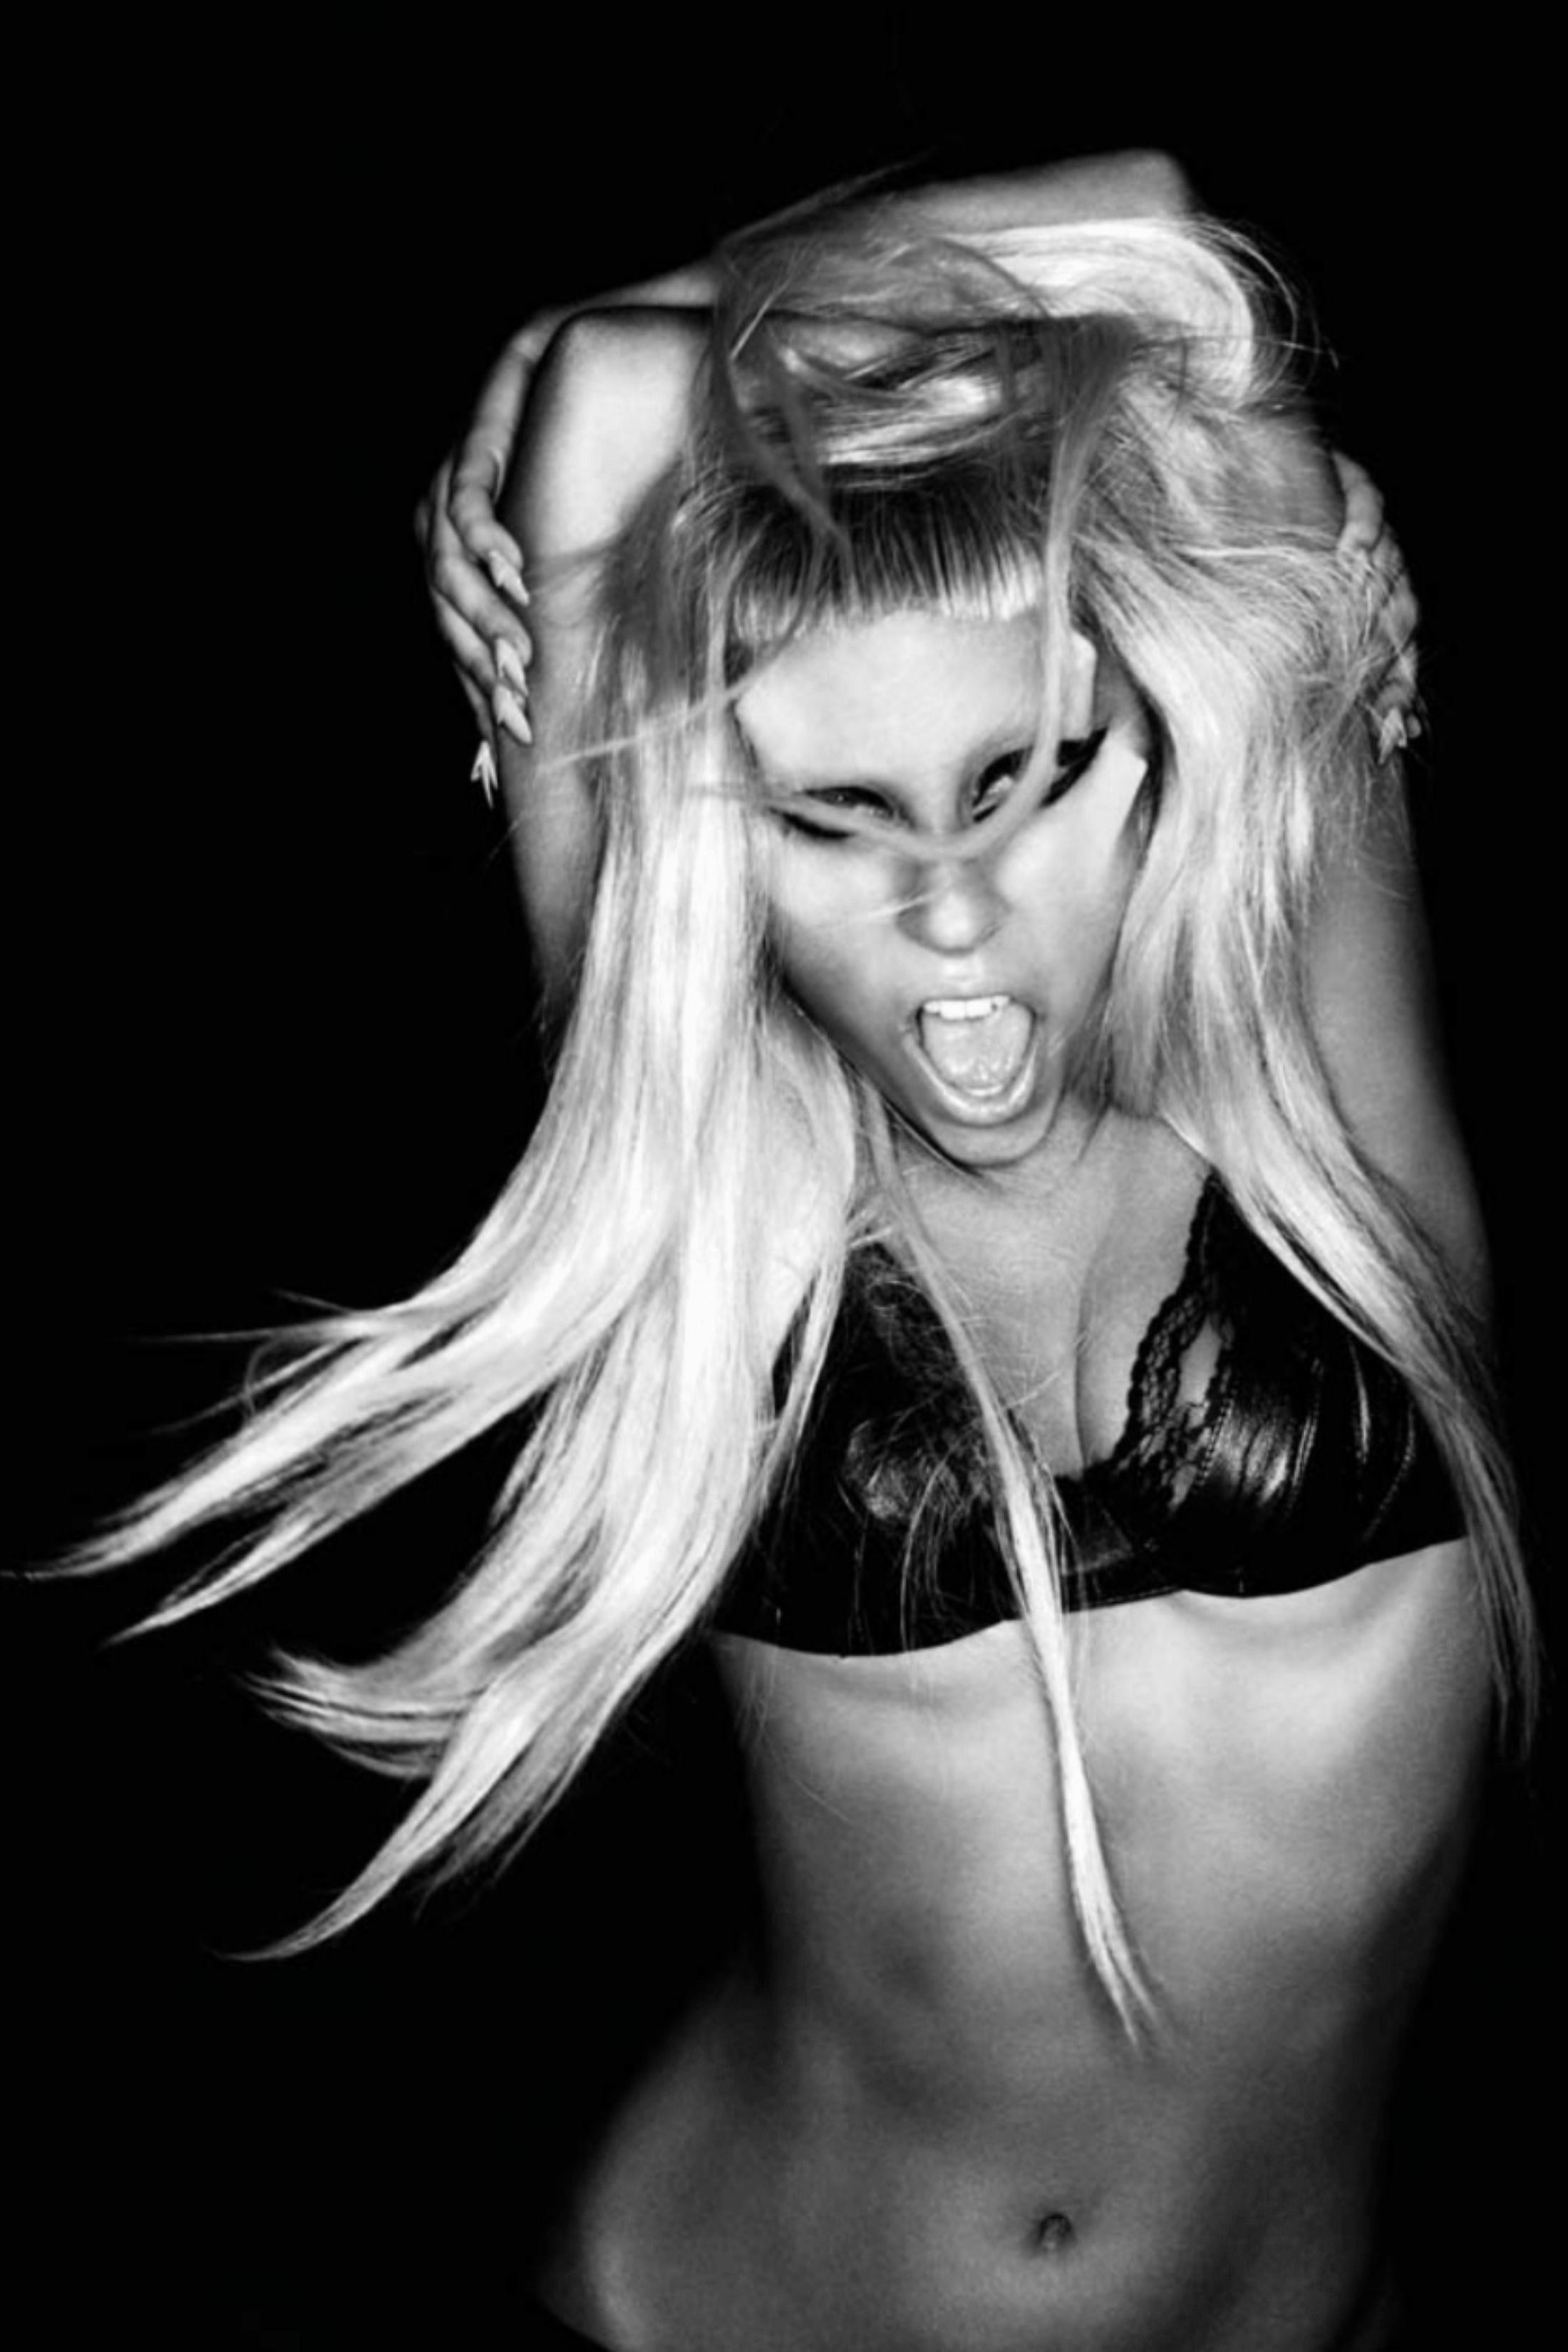 Lady Gaga 'Born This Way' Photohoot, Shot By Nick Knight. Lady gaga photohoot, Lady gaga picture, Lady gaga